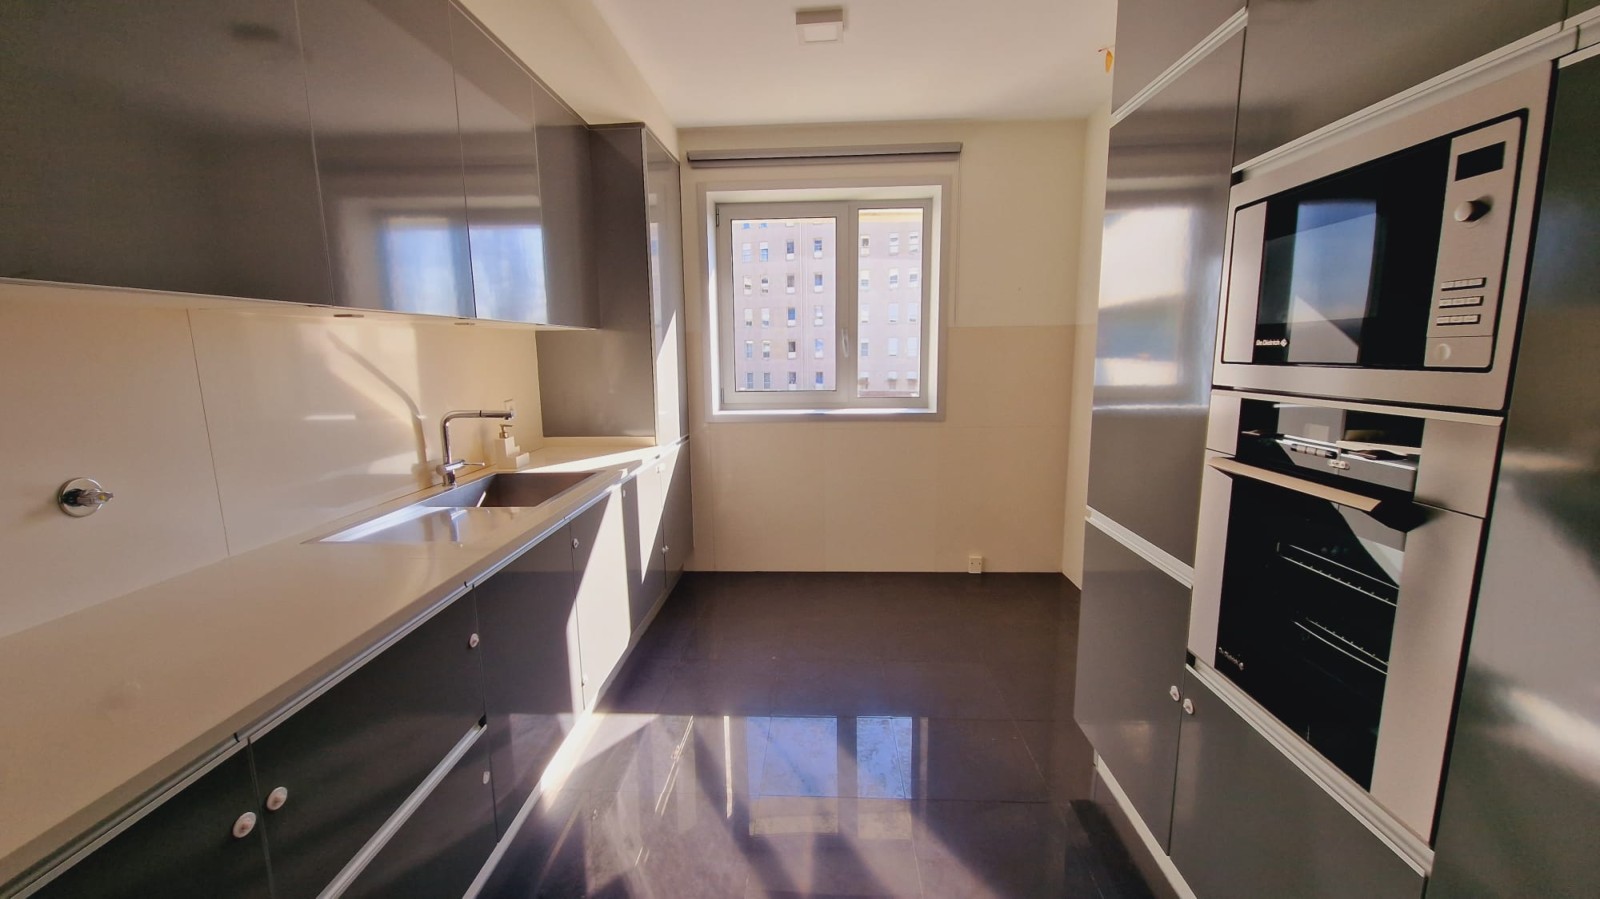 Duplex-Wohnung mit Balkon, zu verkaufen, in Lordelo do Ouro, Porto, Portugal_219116